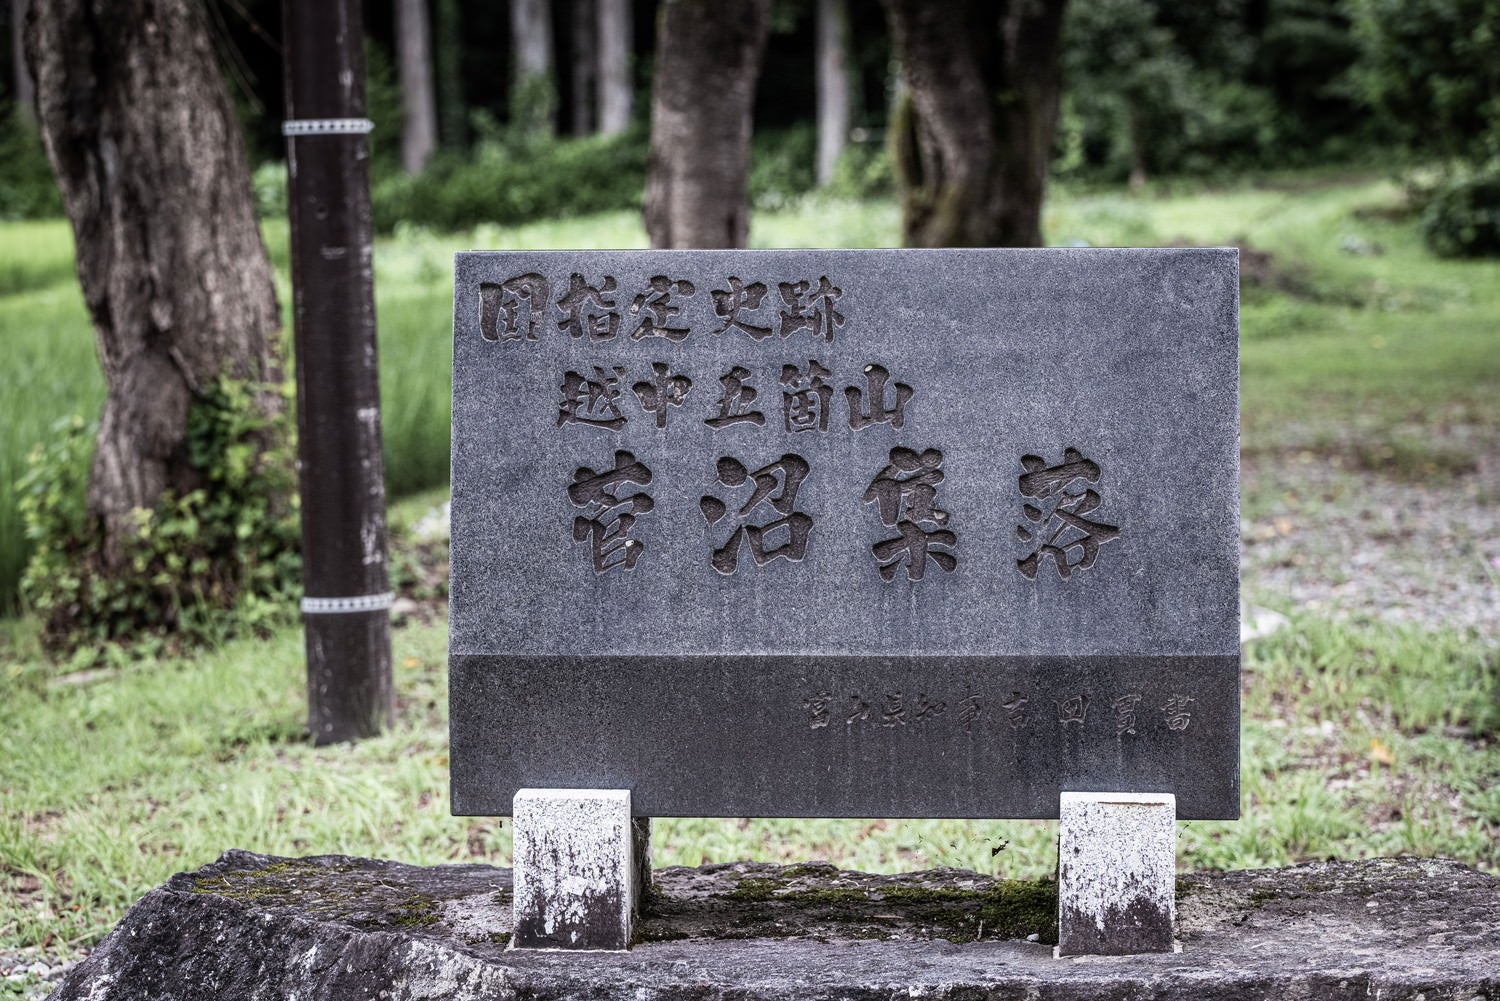 国指定史跡越中五箇山菅沼集落の石碑の写真素材